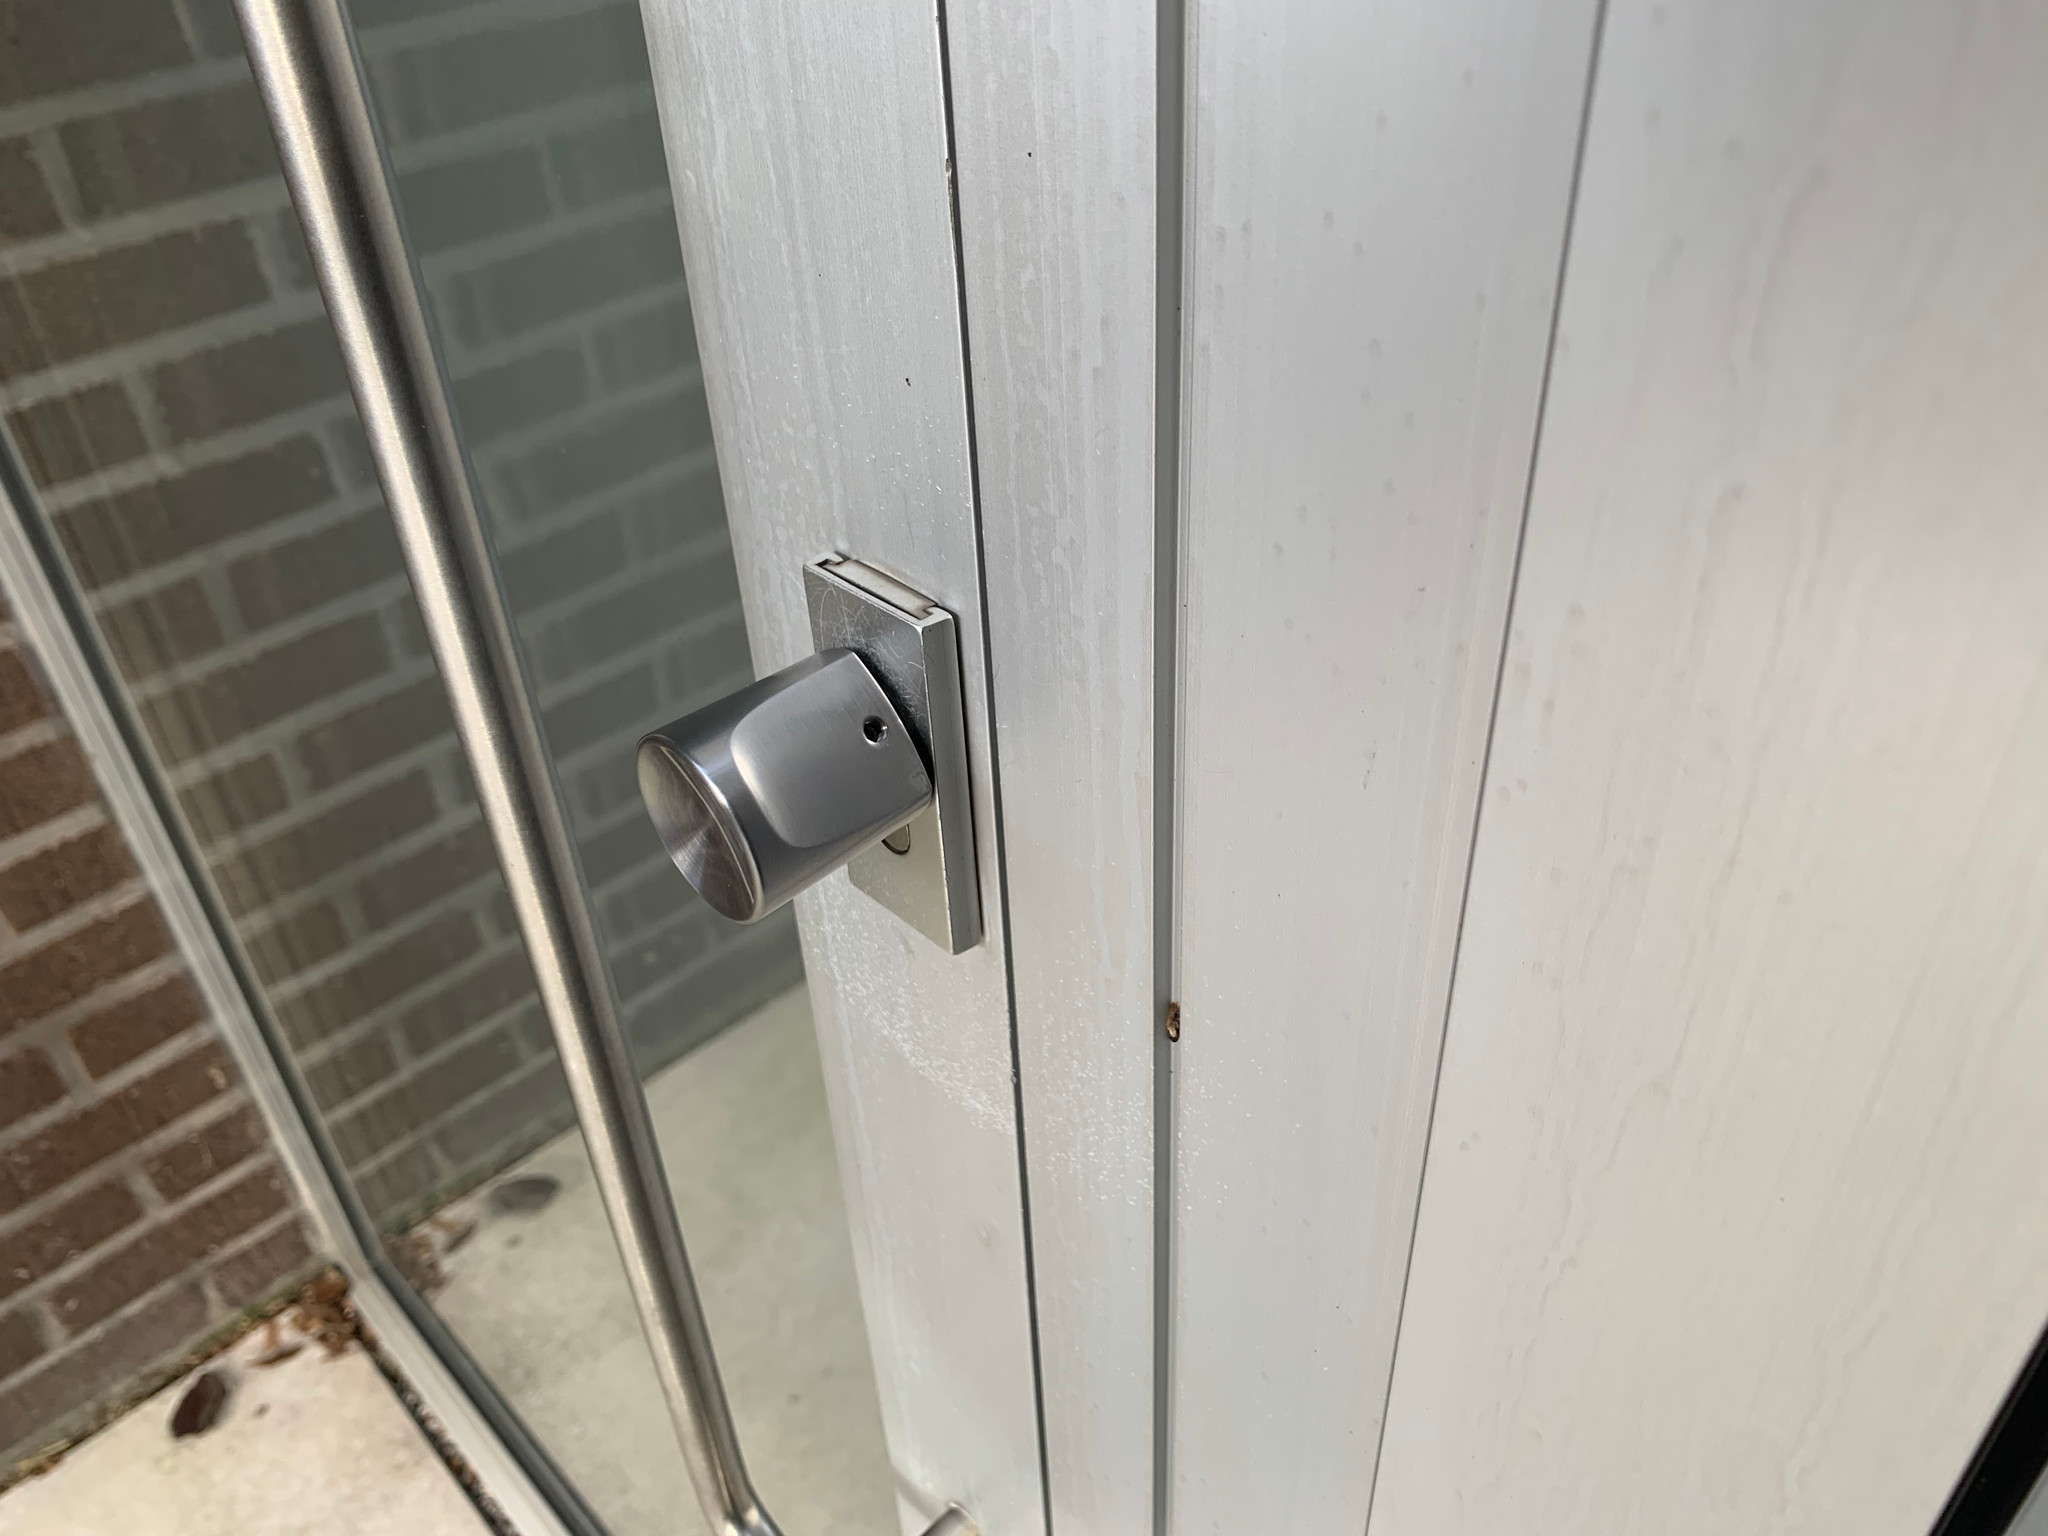 Bold Smart Lock SX-45 deurslot Handleiding